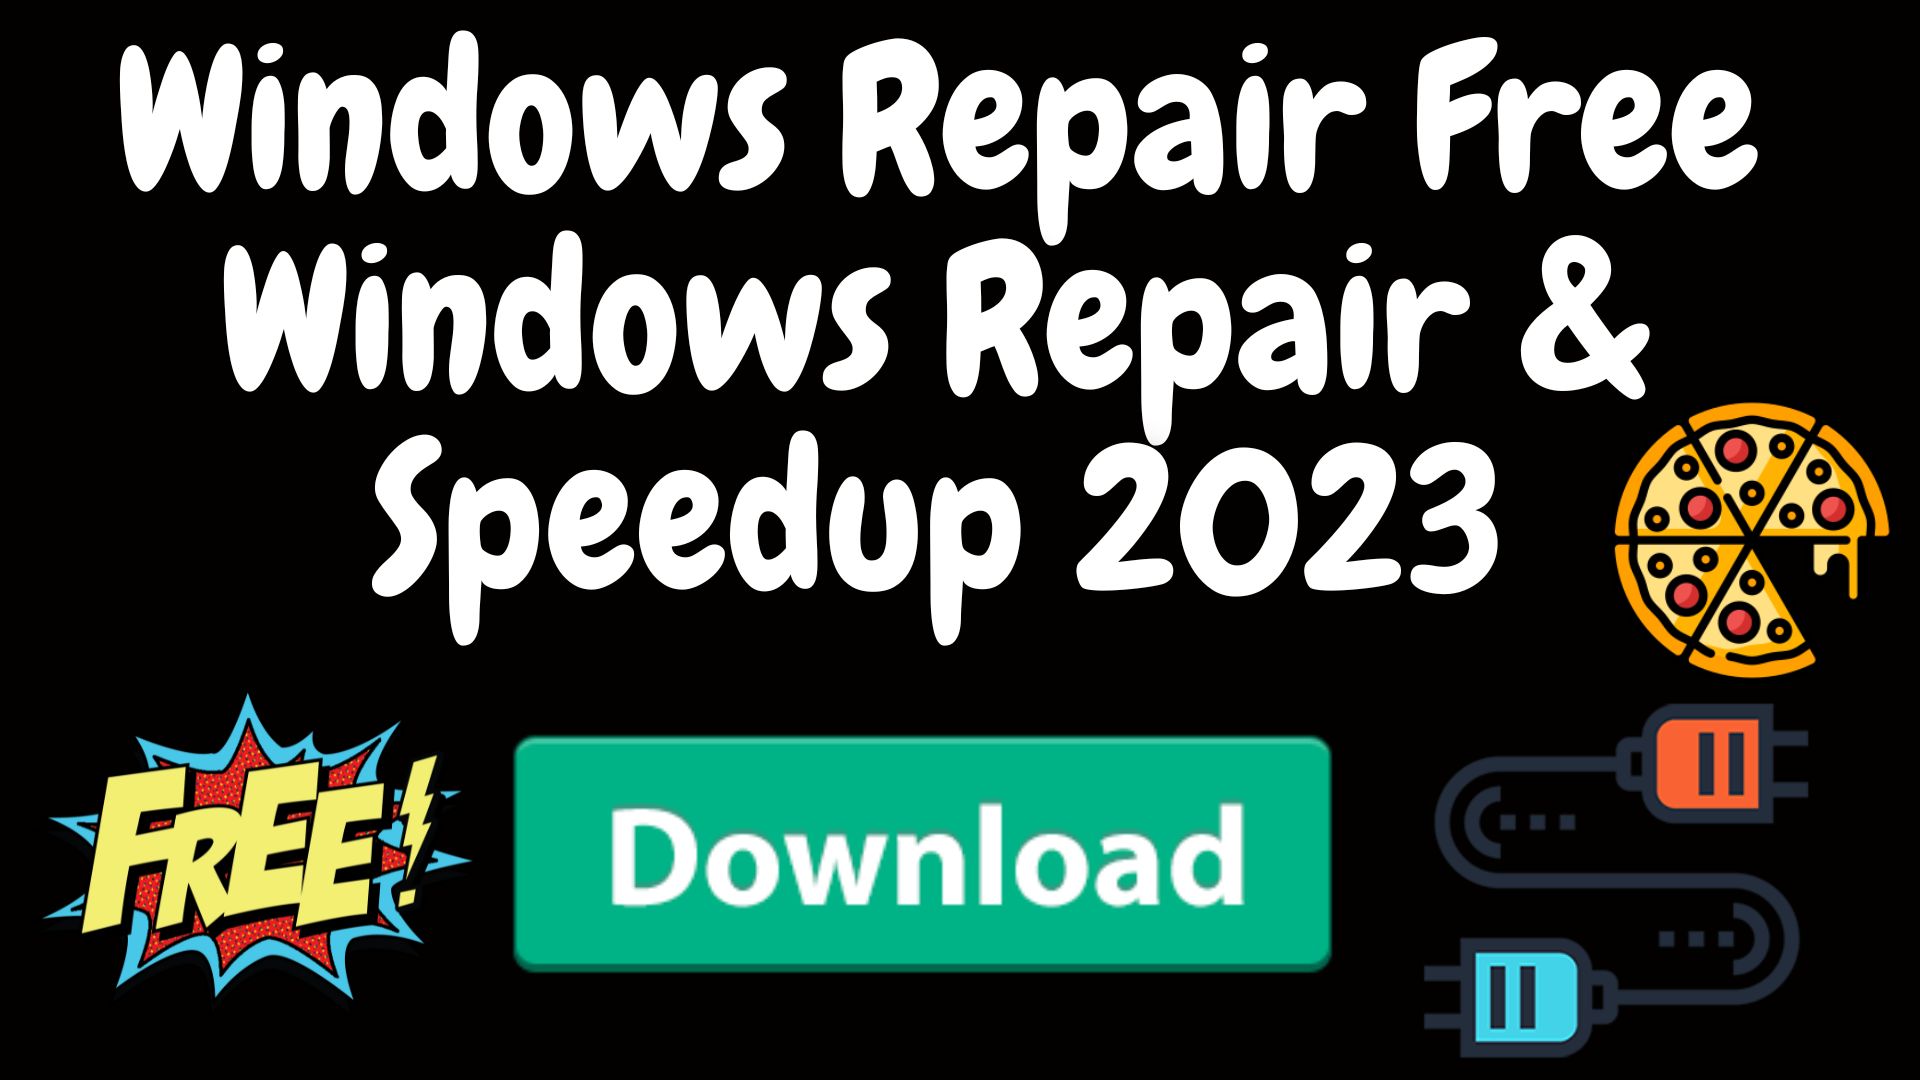 Windows repair free windows repair & speedup 2023